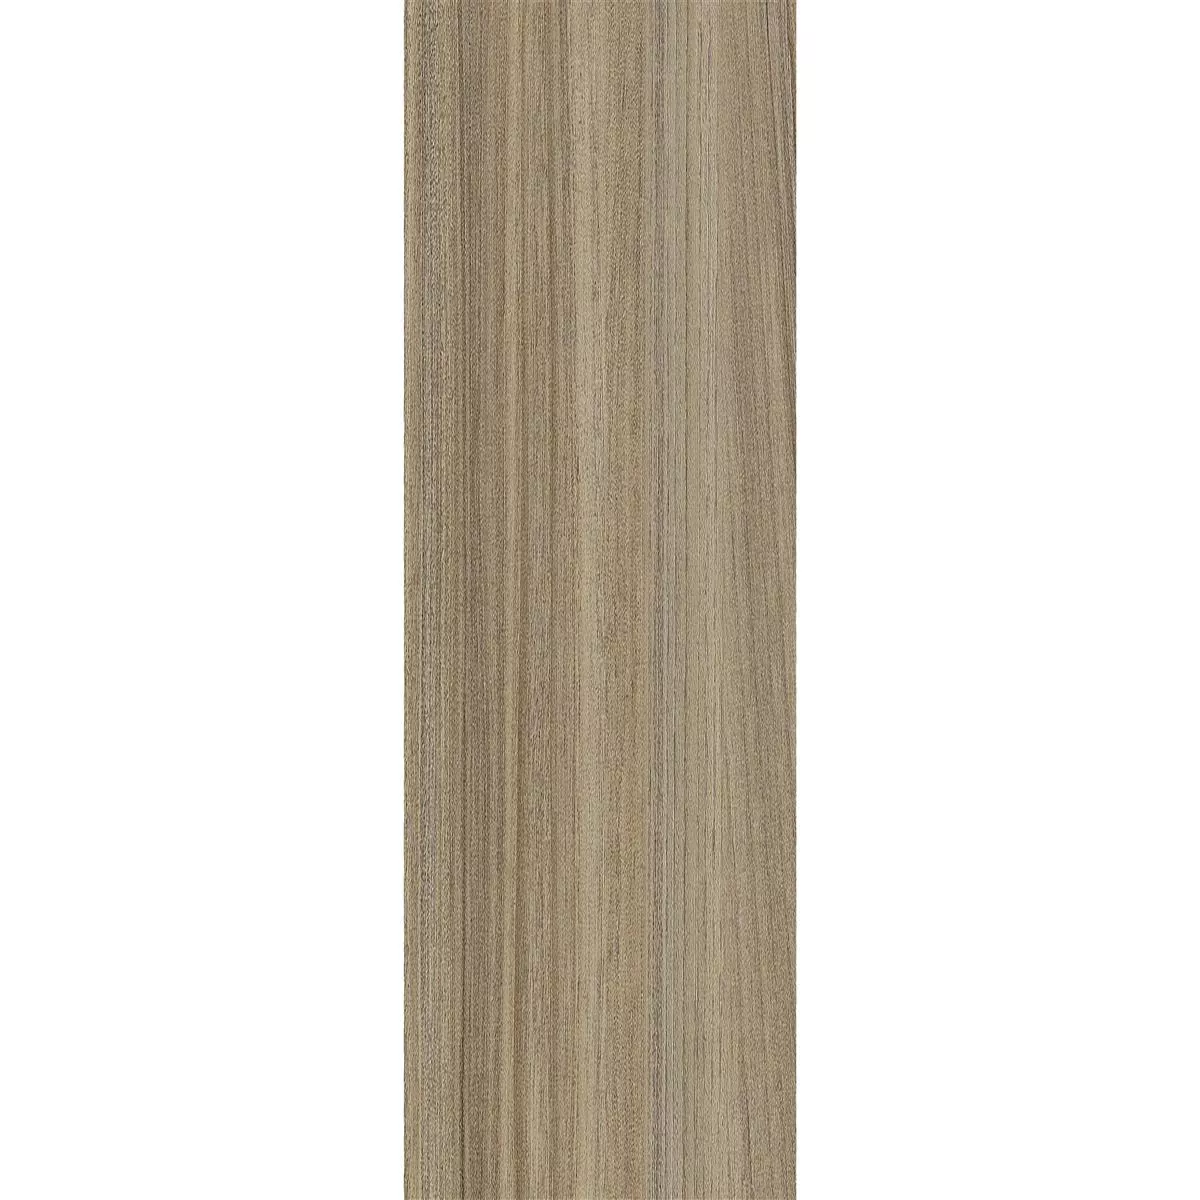 Δάπεδο Από Bινύλιο Σύστημα Κλικ Tinadia Μπεζ 17,2x121cm